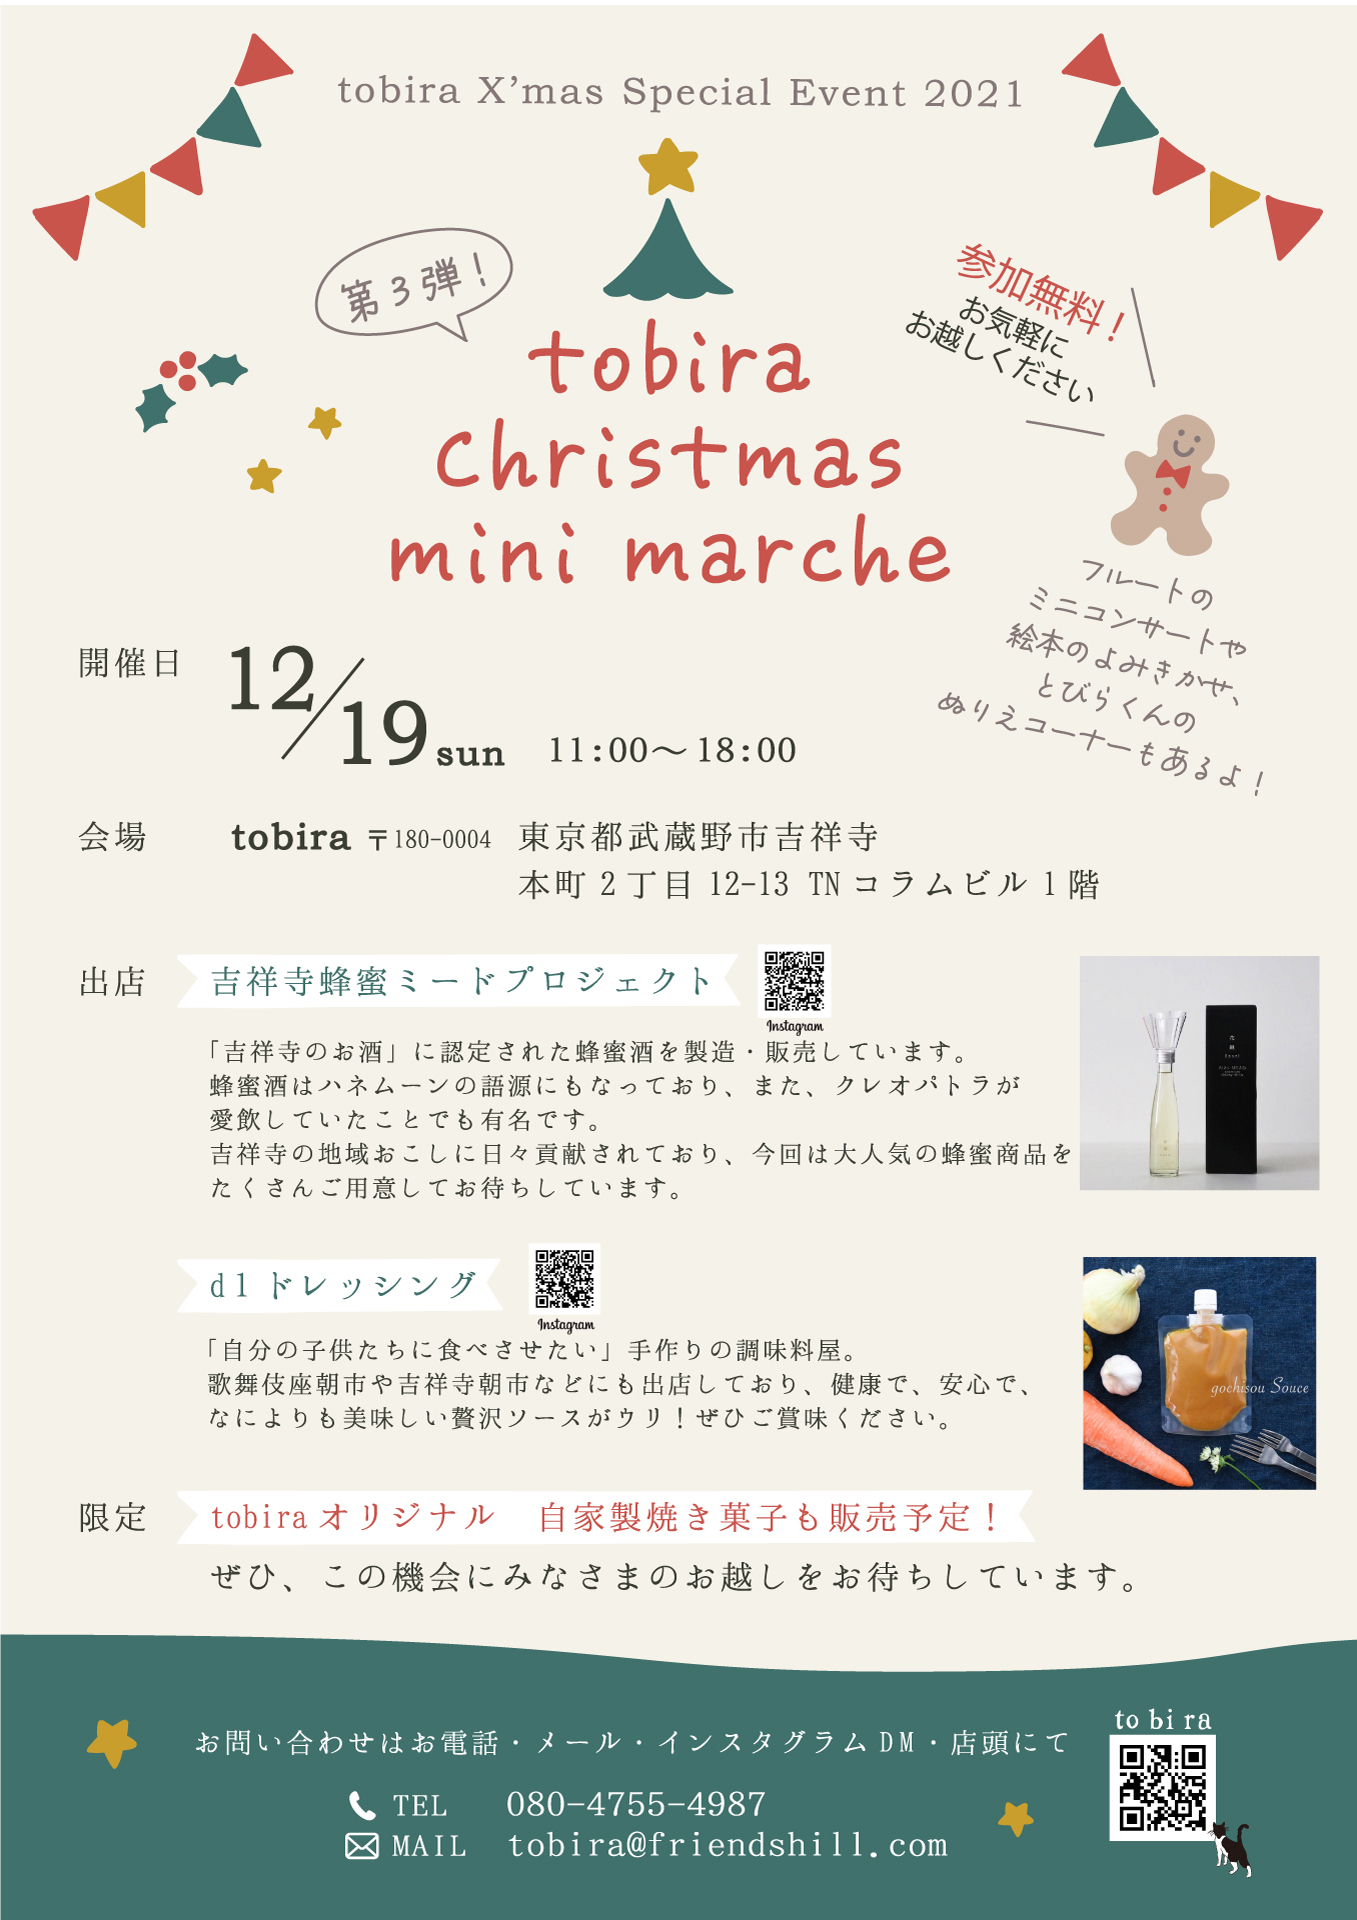 【参加費無料】第3弾☆tobira Christmas mini marche ♪